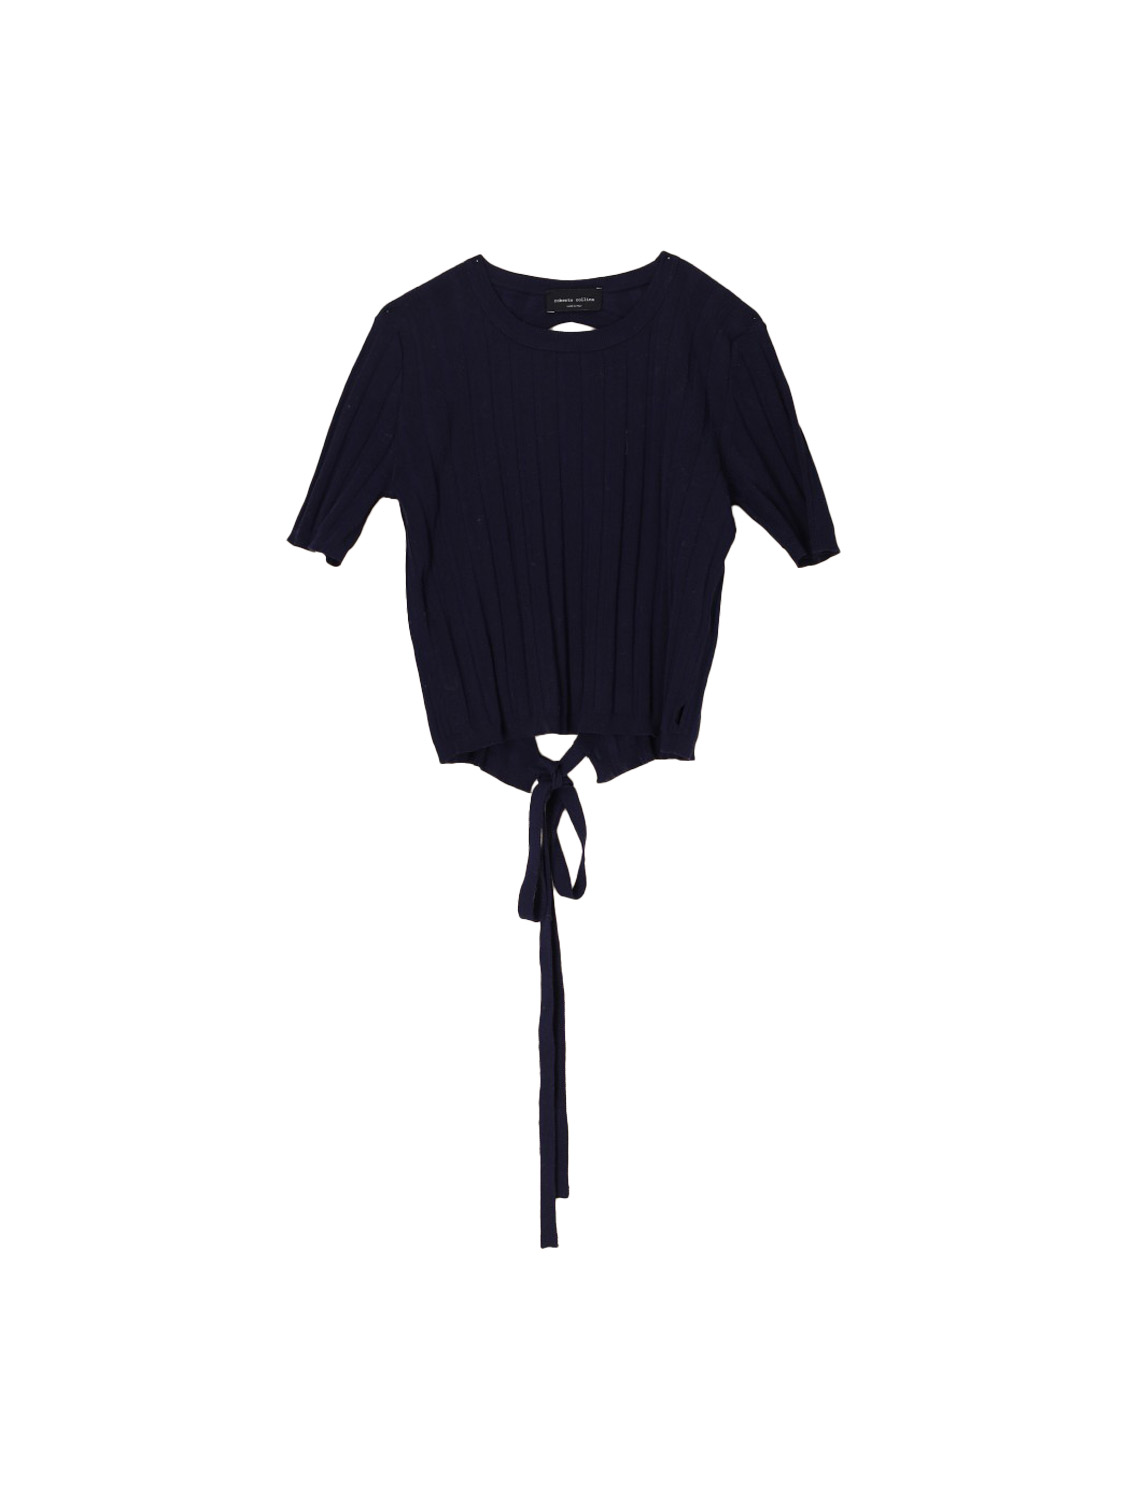 MC Schiena – Baumwoll-Shirt mit weitem Rückenausschnitt 	 